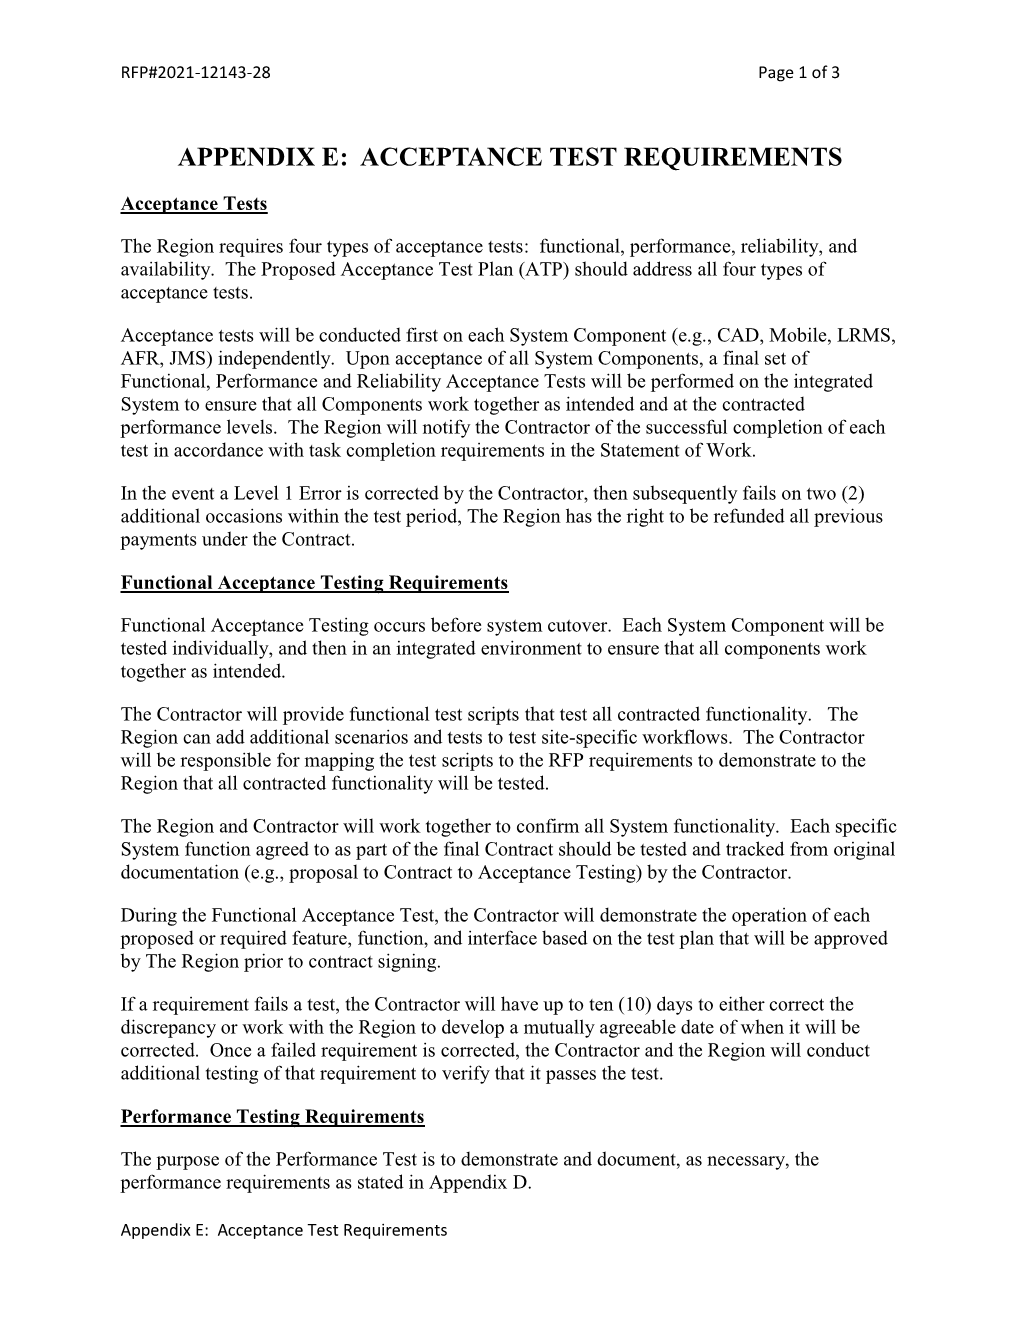 Appendix E: Acceptance Test Requirements